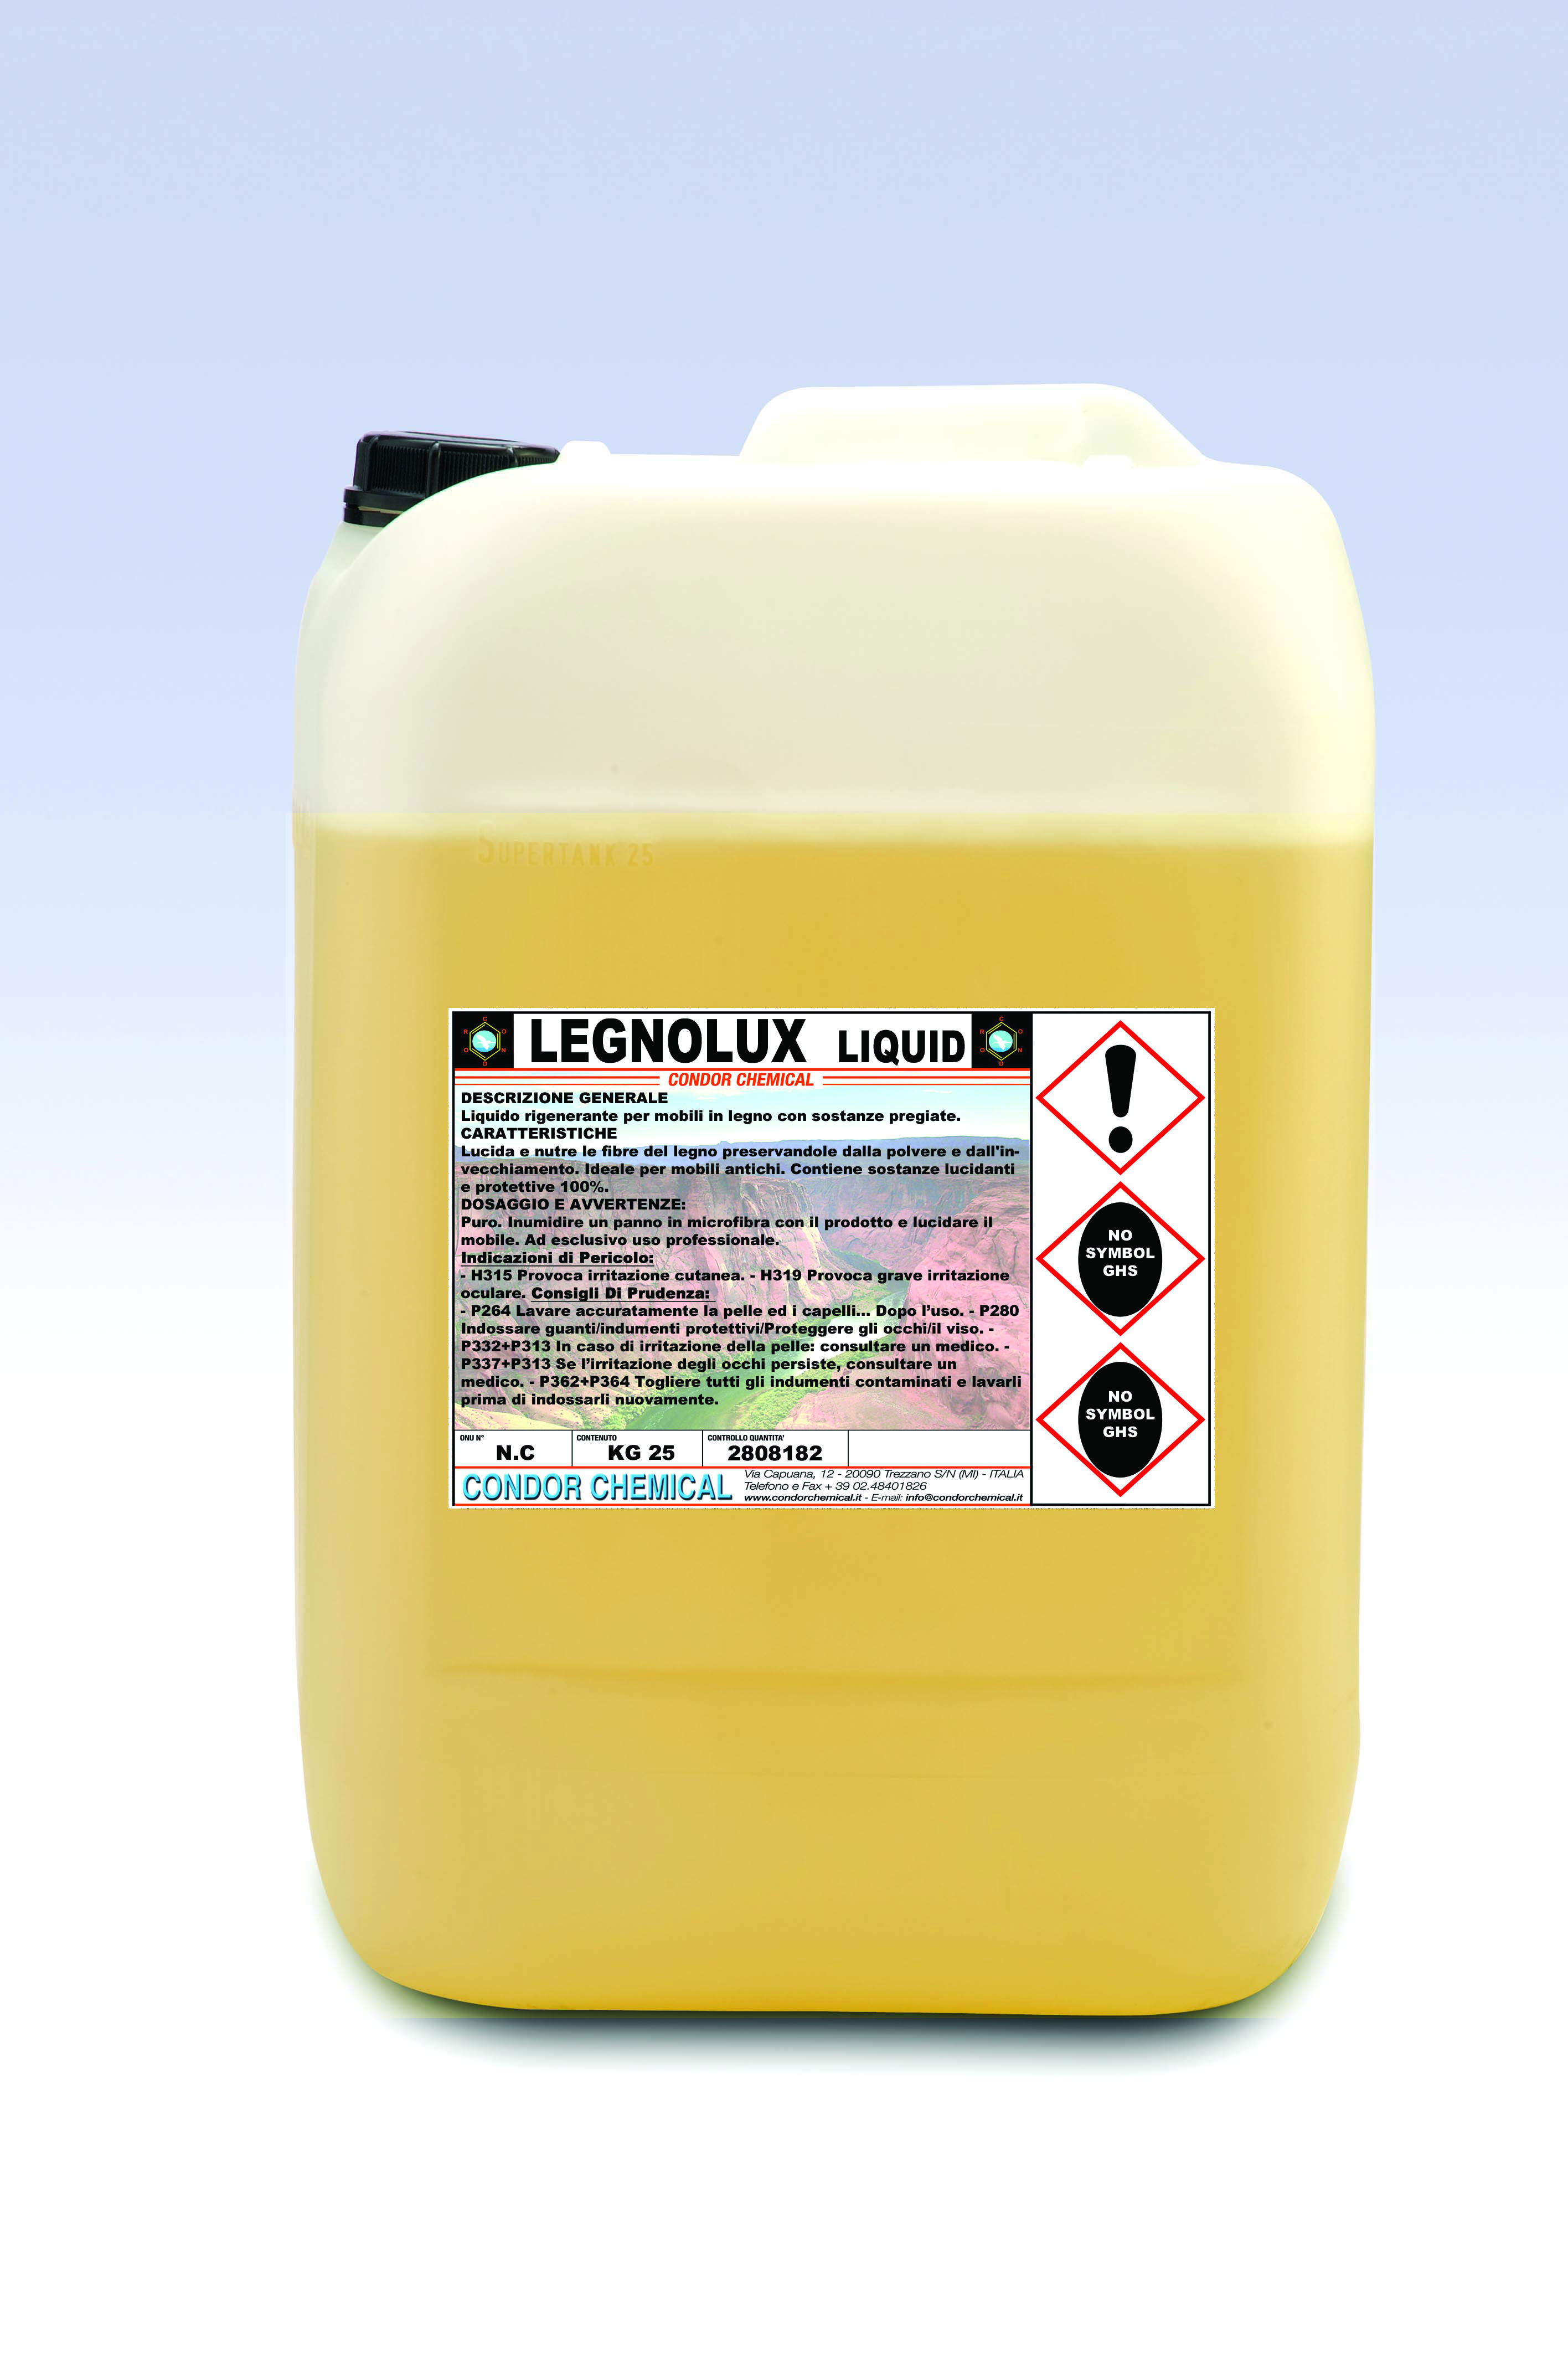 Legnolux Liquido